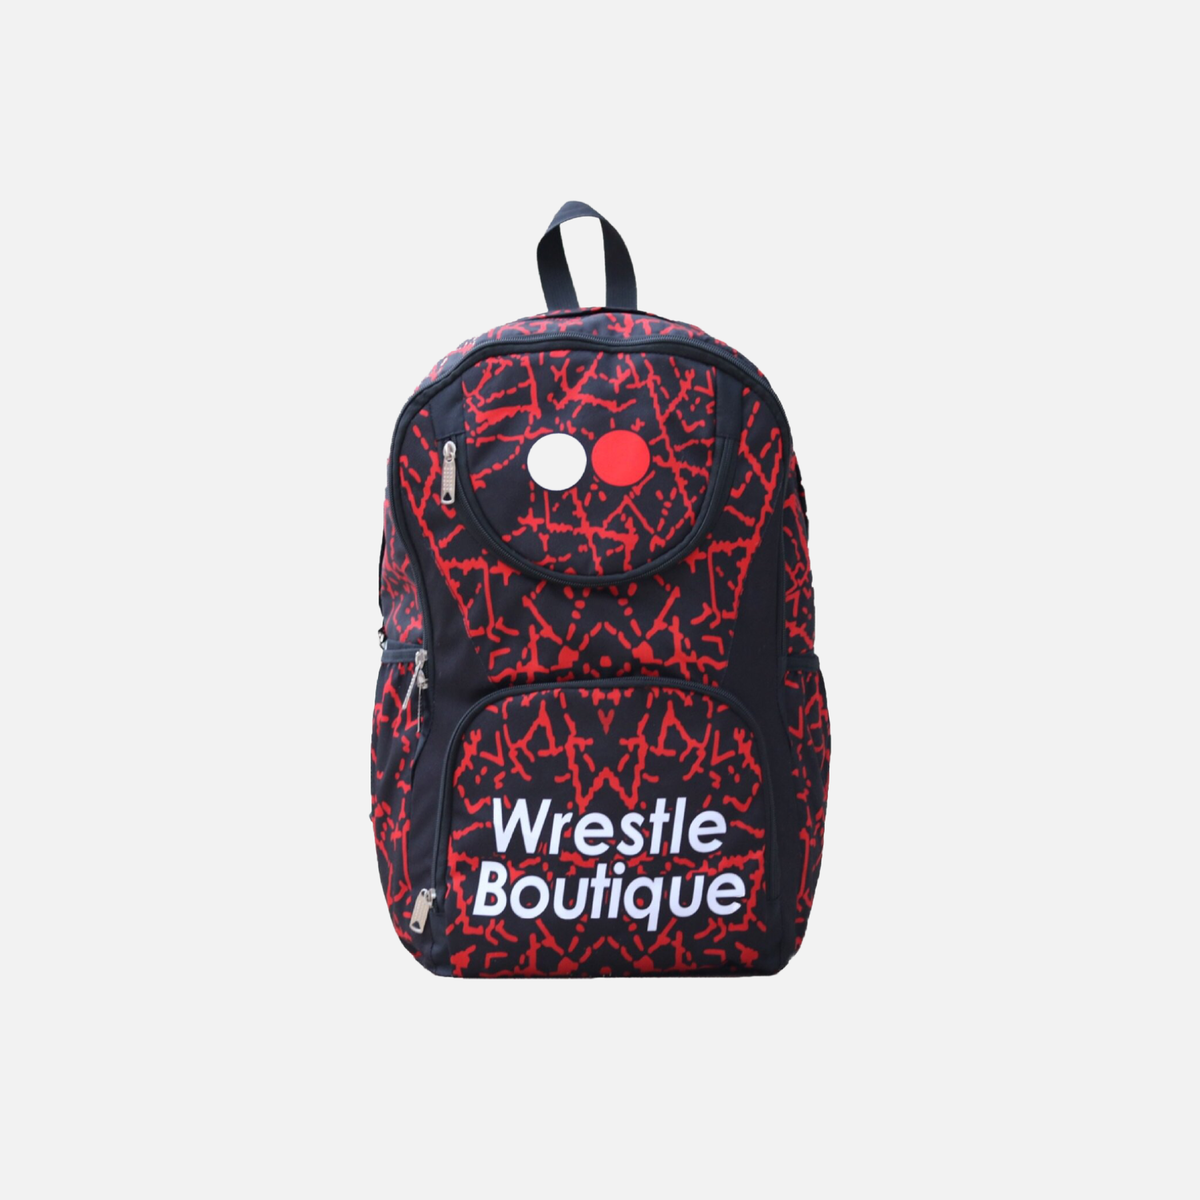 WB &quot;Black Widow&quot; Backpack - Wrestle Boutique